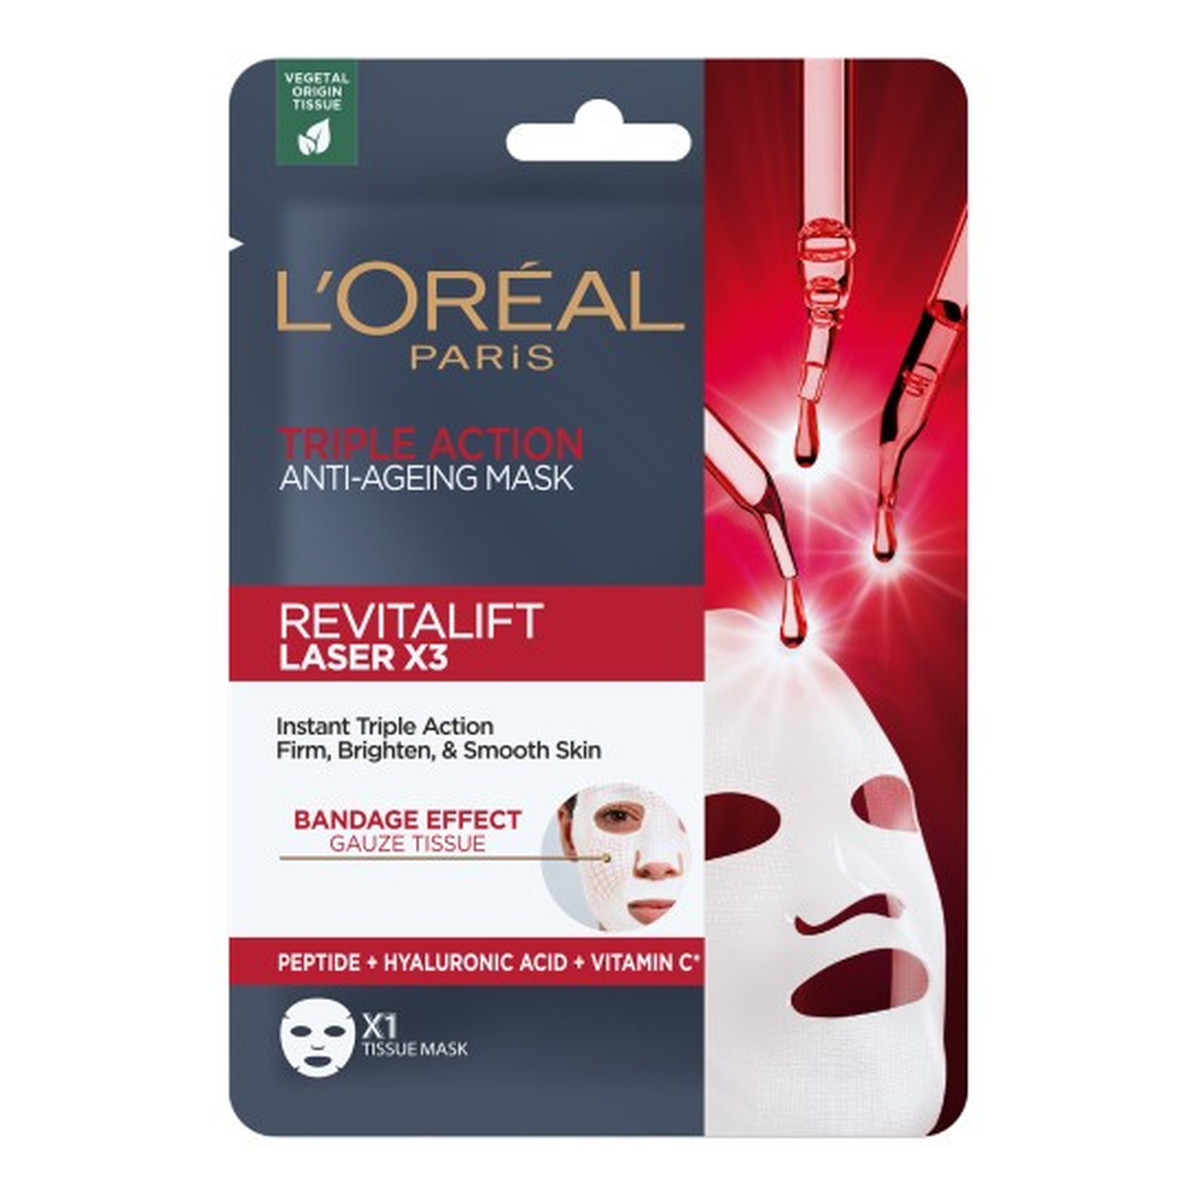 L'Oreal Paris Revitalift Laser X3 Maska Przeciwzmarszczkowa W Płacie